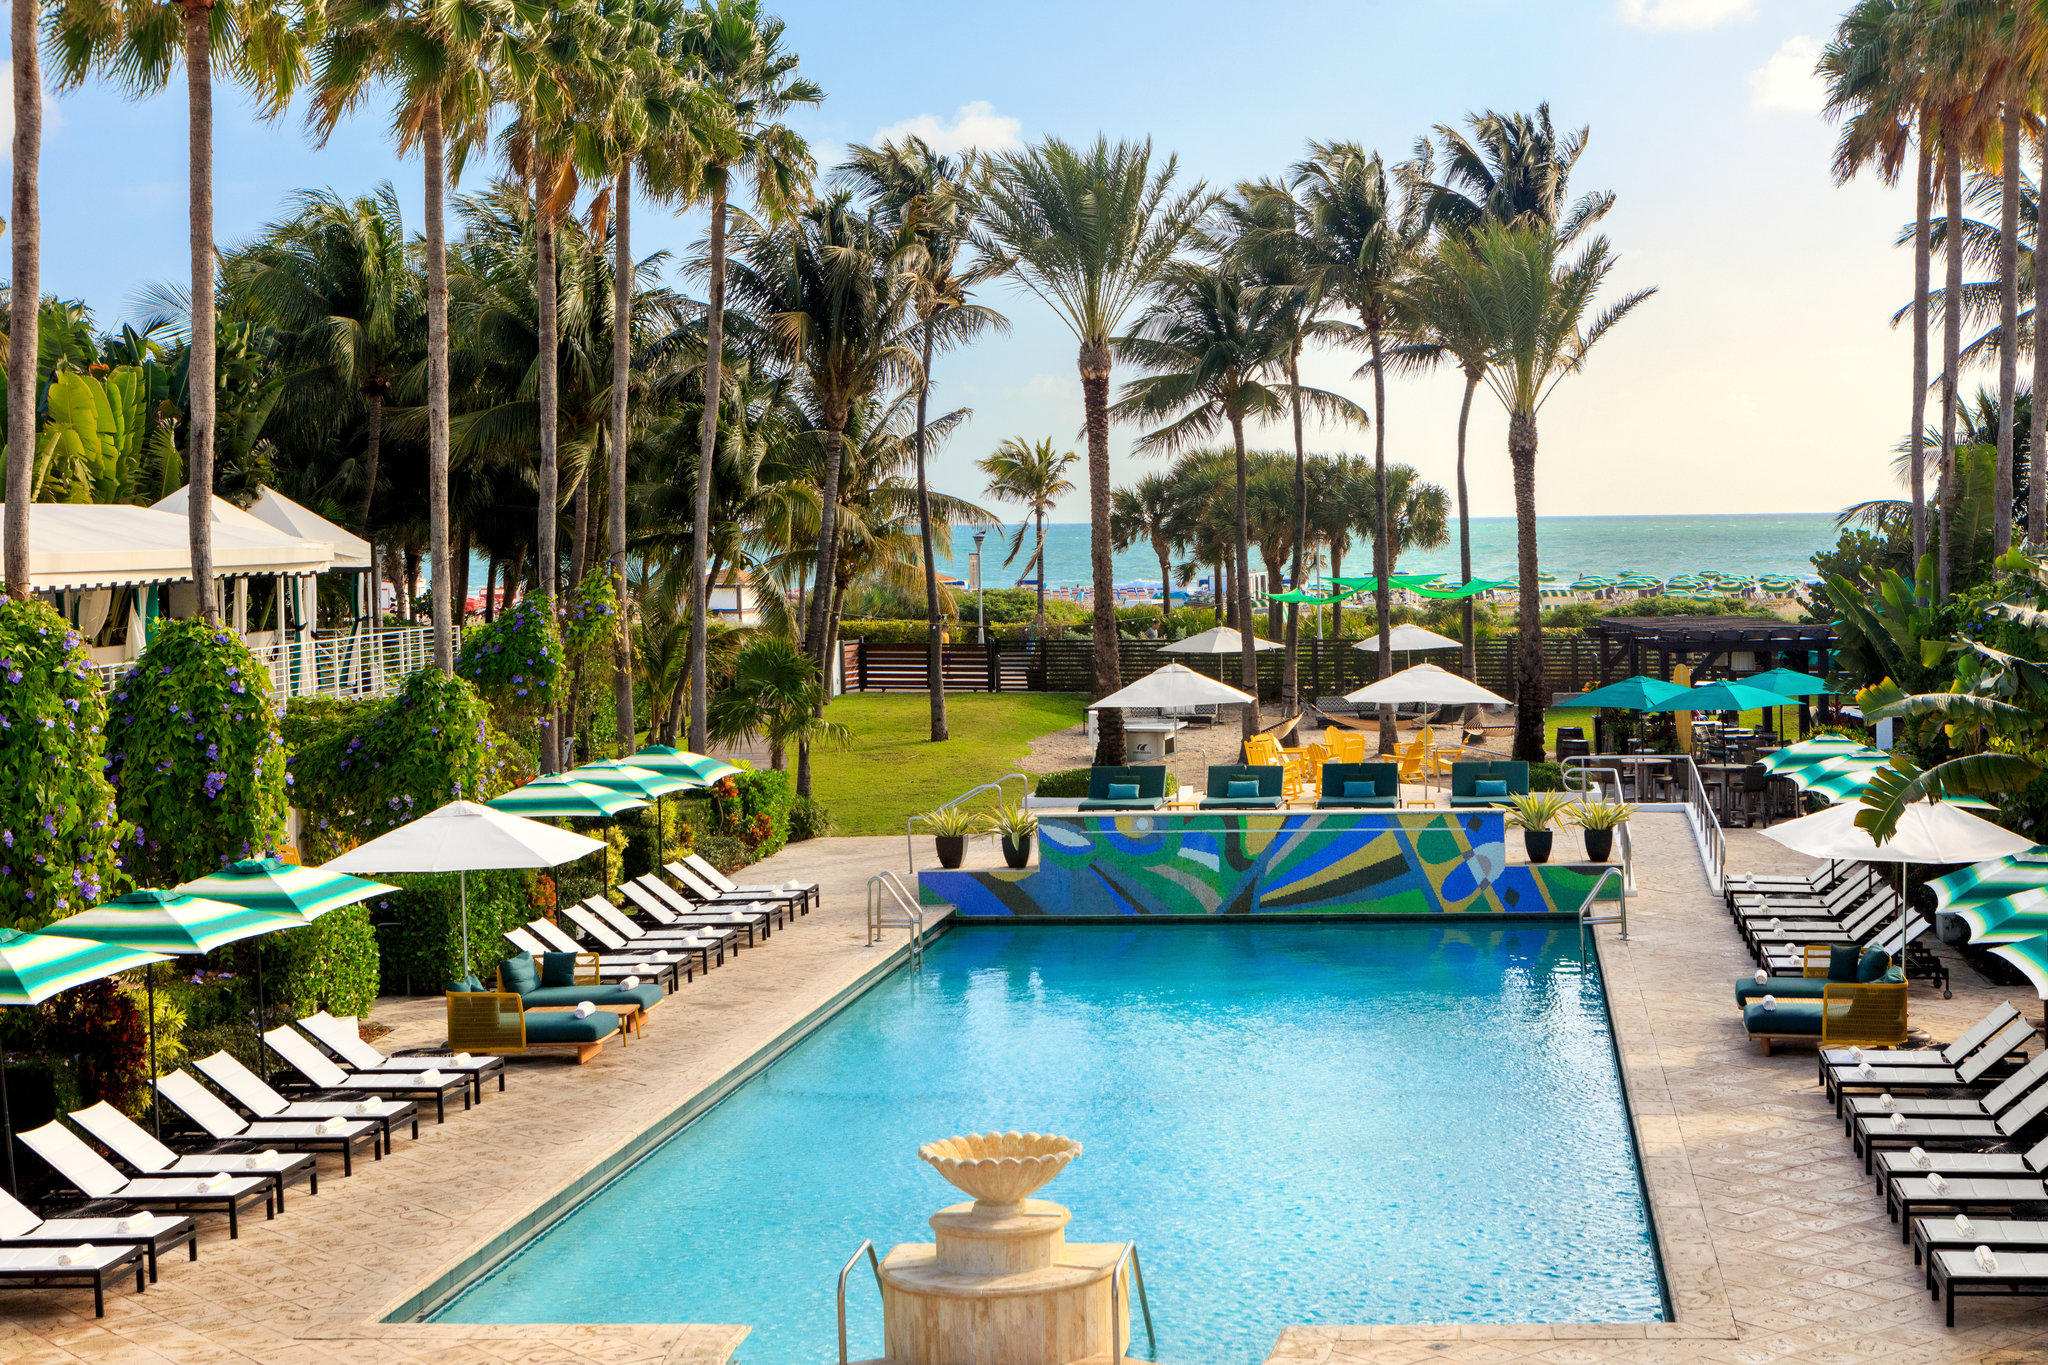 Kimpton Surfcomber Hotel - Miami Beach, FL 33139 - (305)532-7715 | ShowMeLocal.com